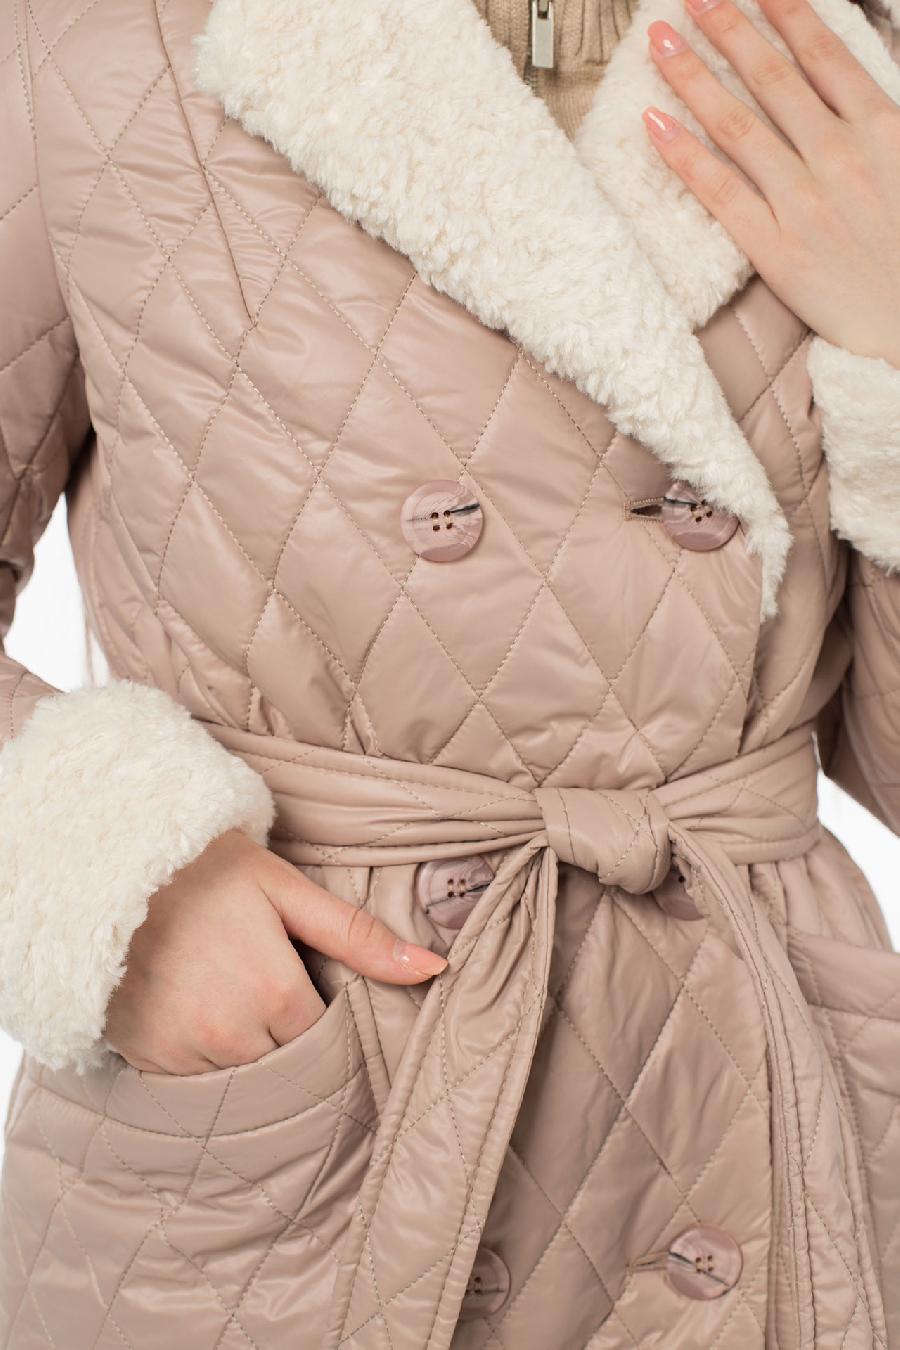 05-2063 Куртка женская зимняя (пояс) Плащевка Бежево-сиреневый